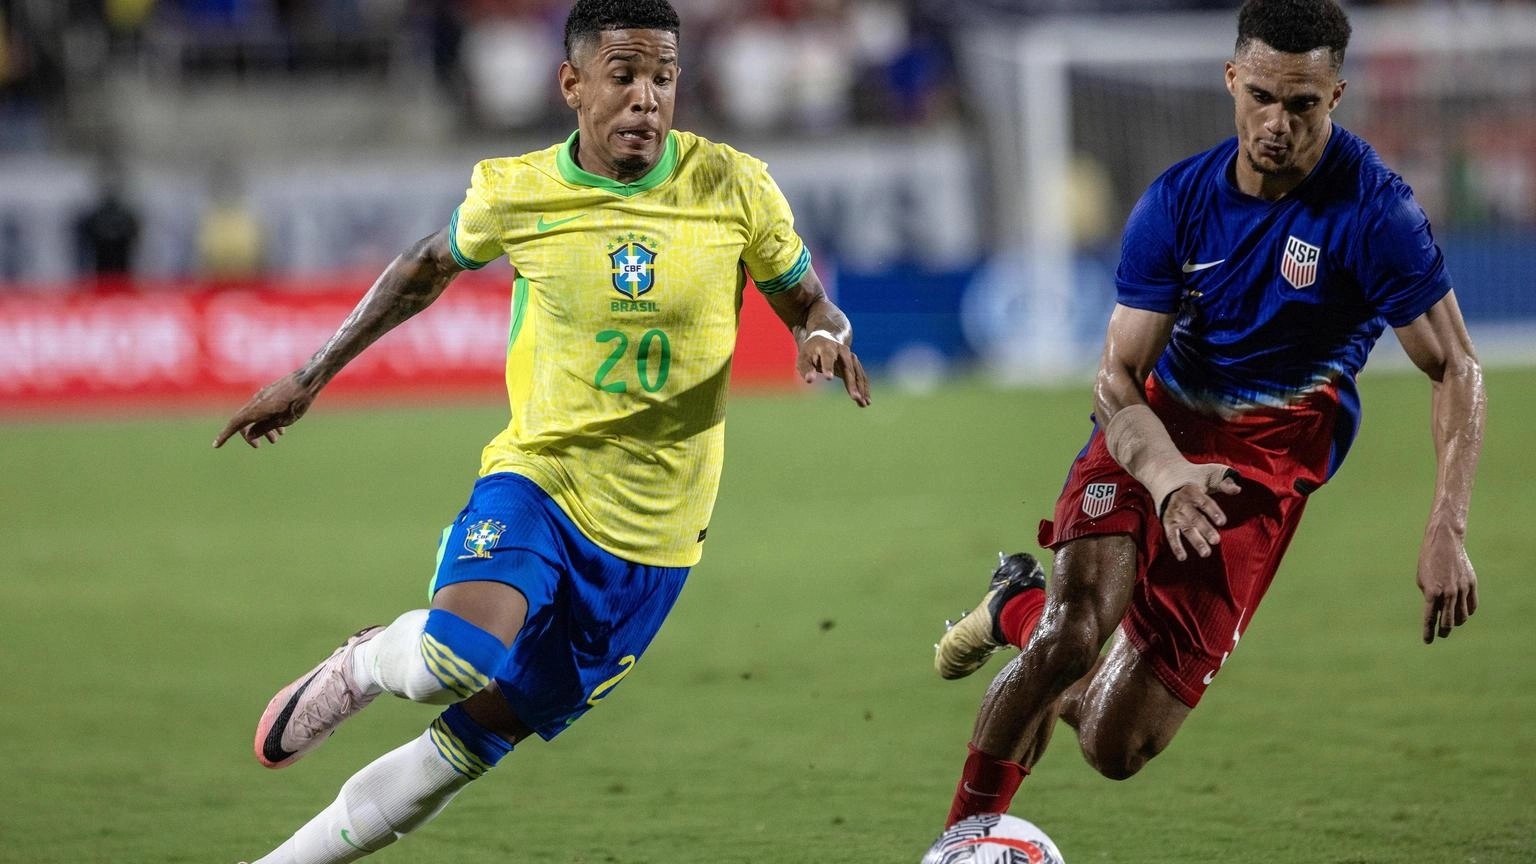 Calcio: il brasiliano Savinho al Manchester City per 40 milioni